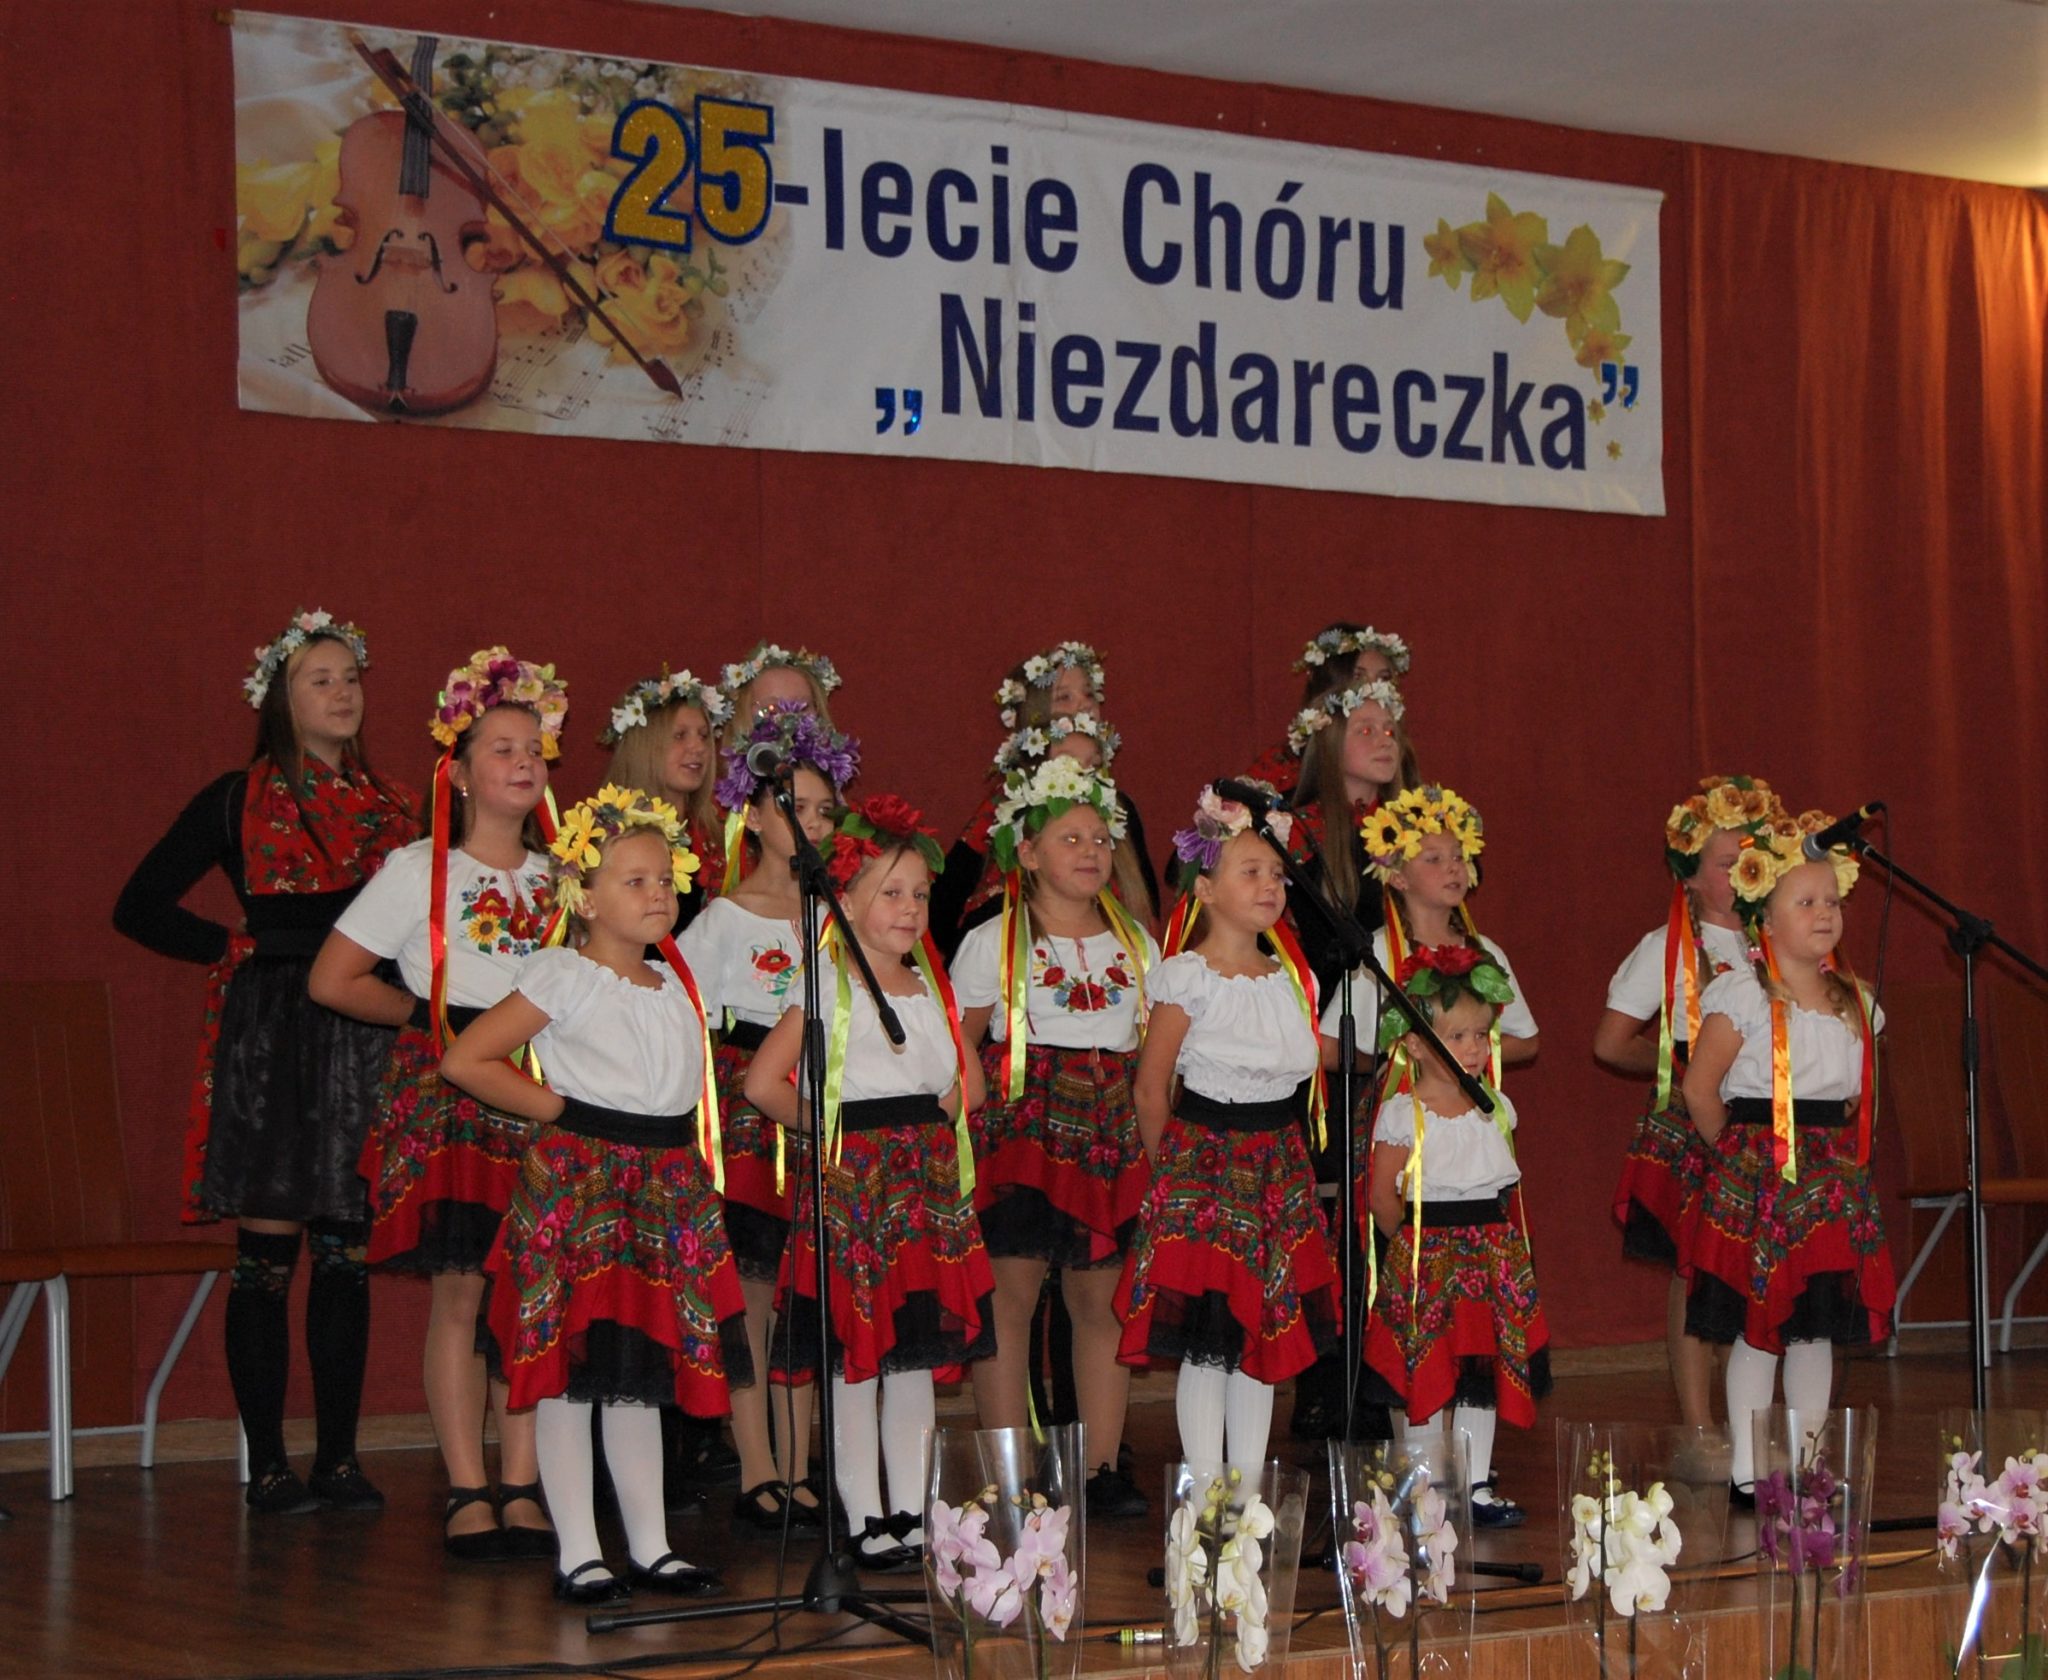 Grupa dziewcząt w strojach regionalnych stojąca na scenie, w tle banek z napisem 25-lecie Chóru Niezdareczka.